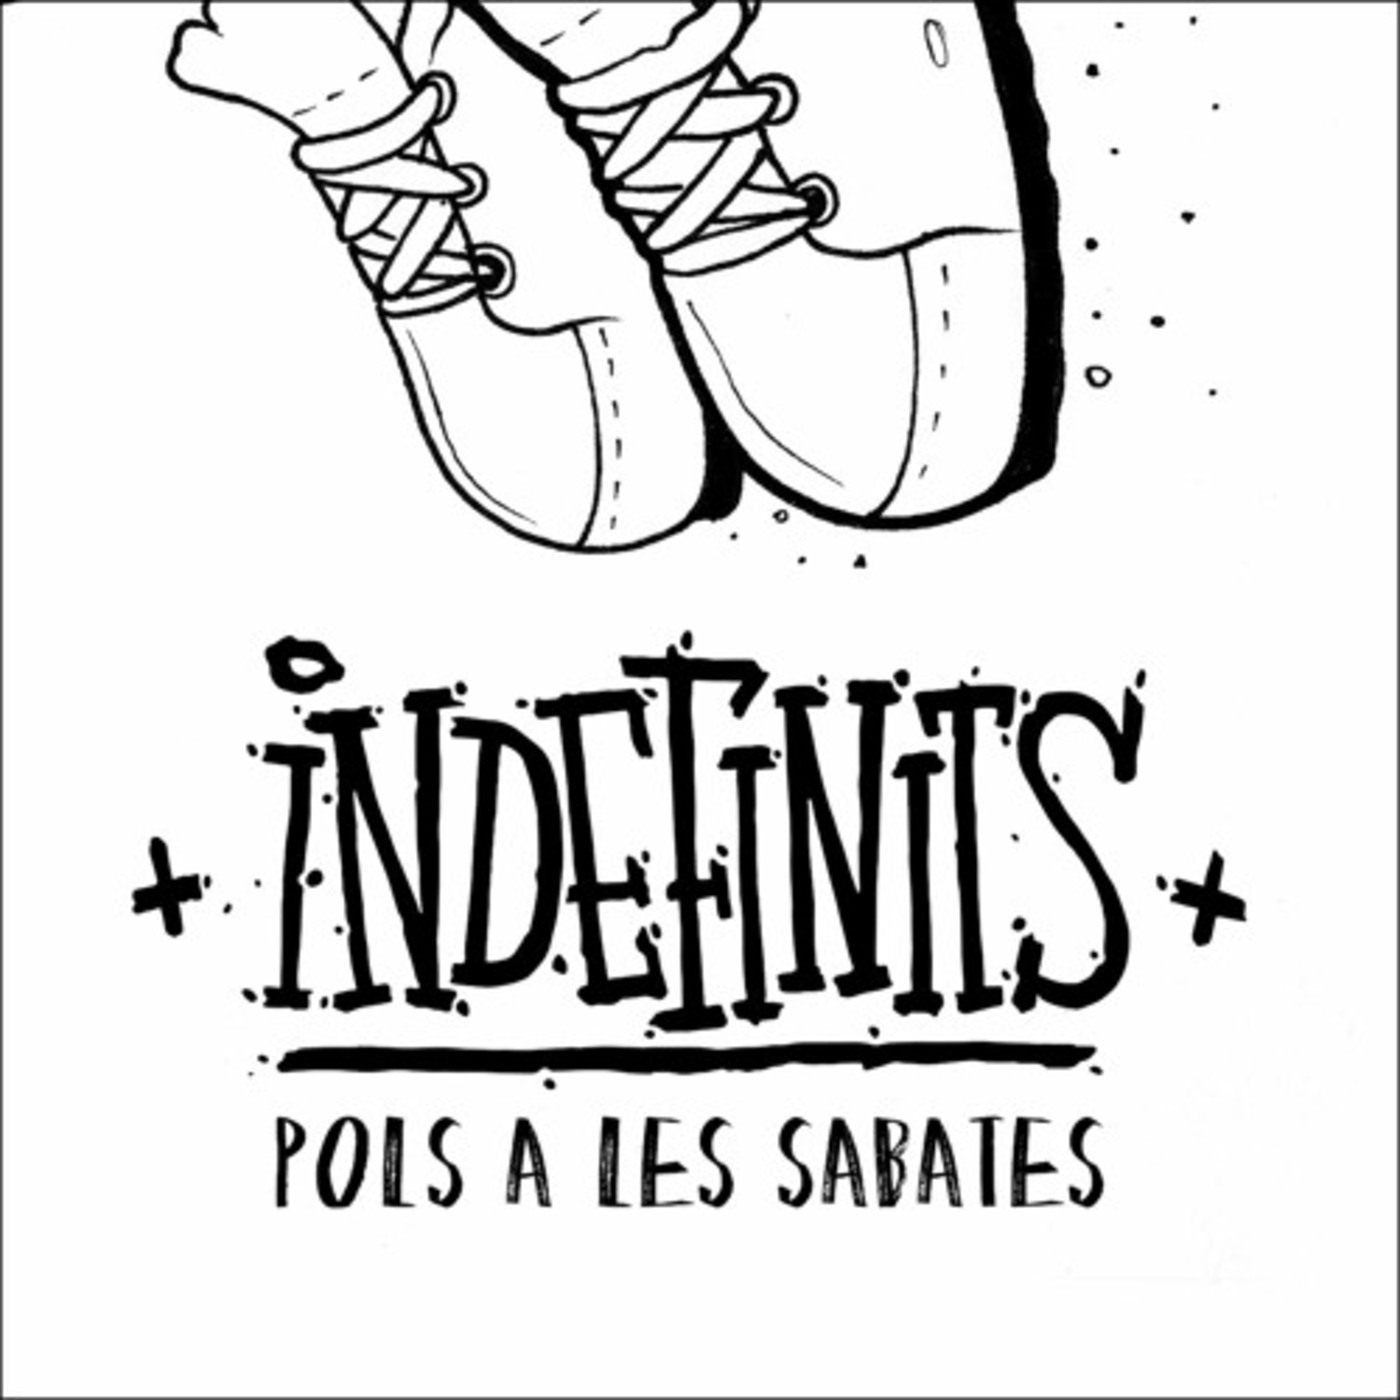 Indefinits - Pols a les sabates | musica en valencià